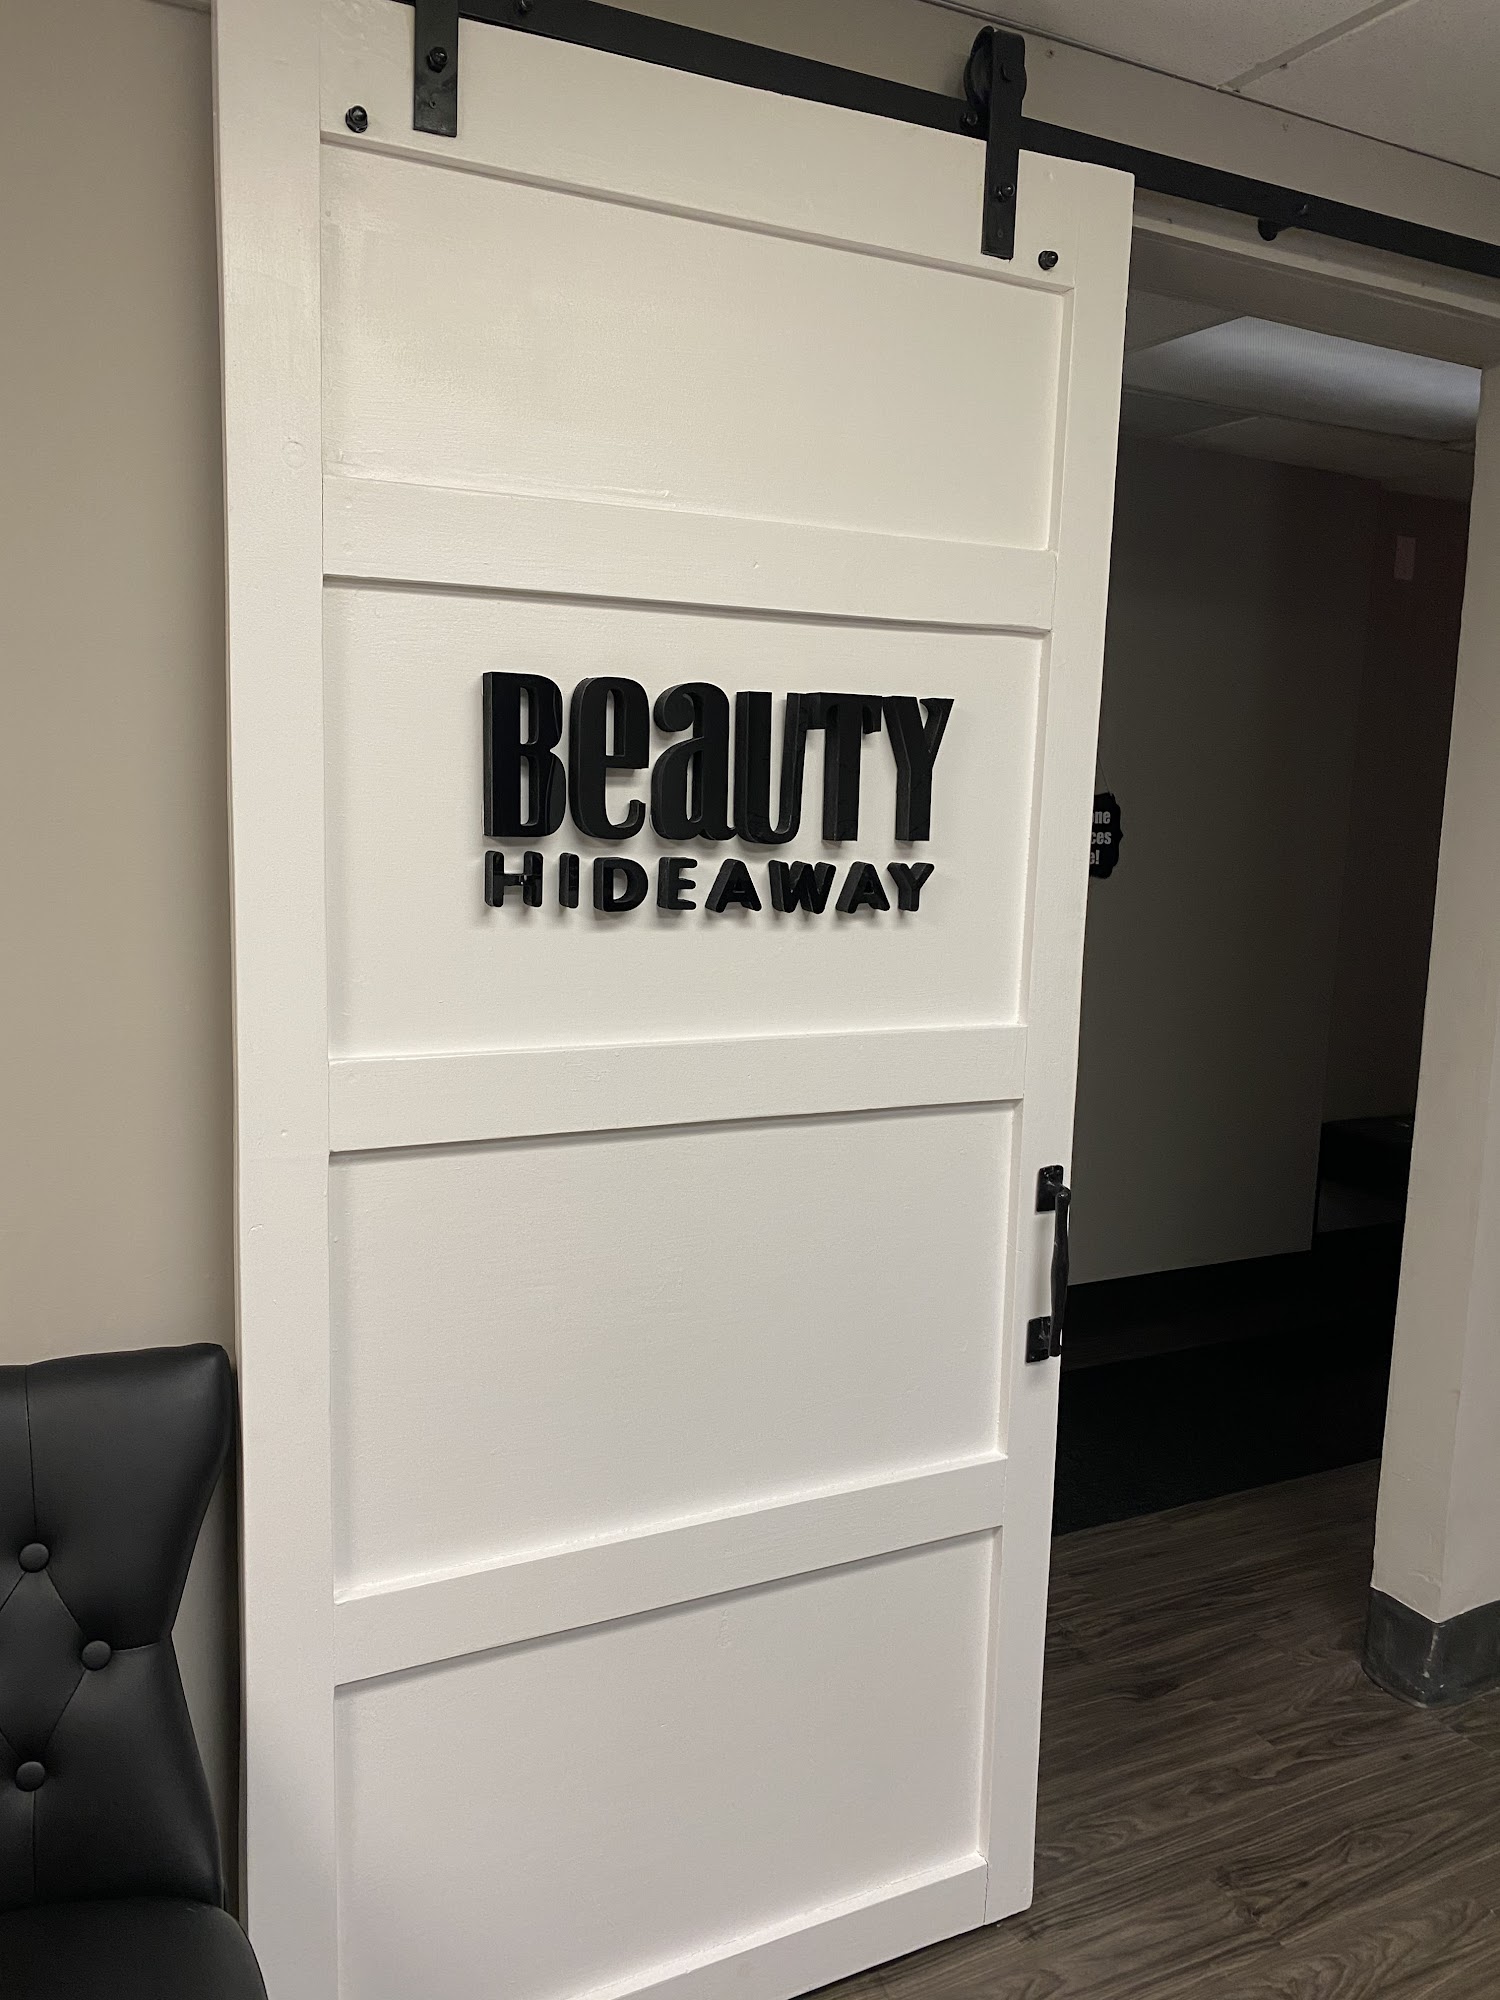 Beauty Hideaway